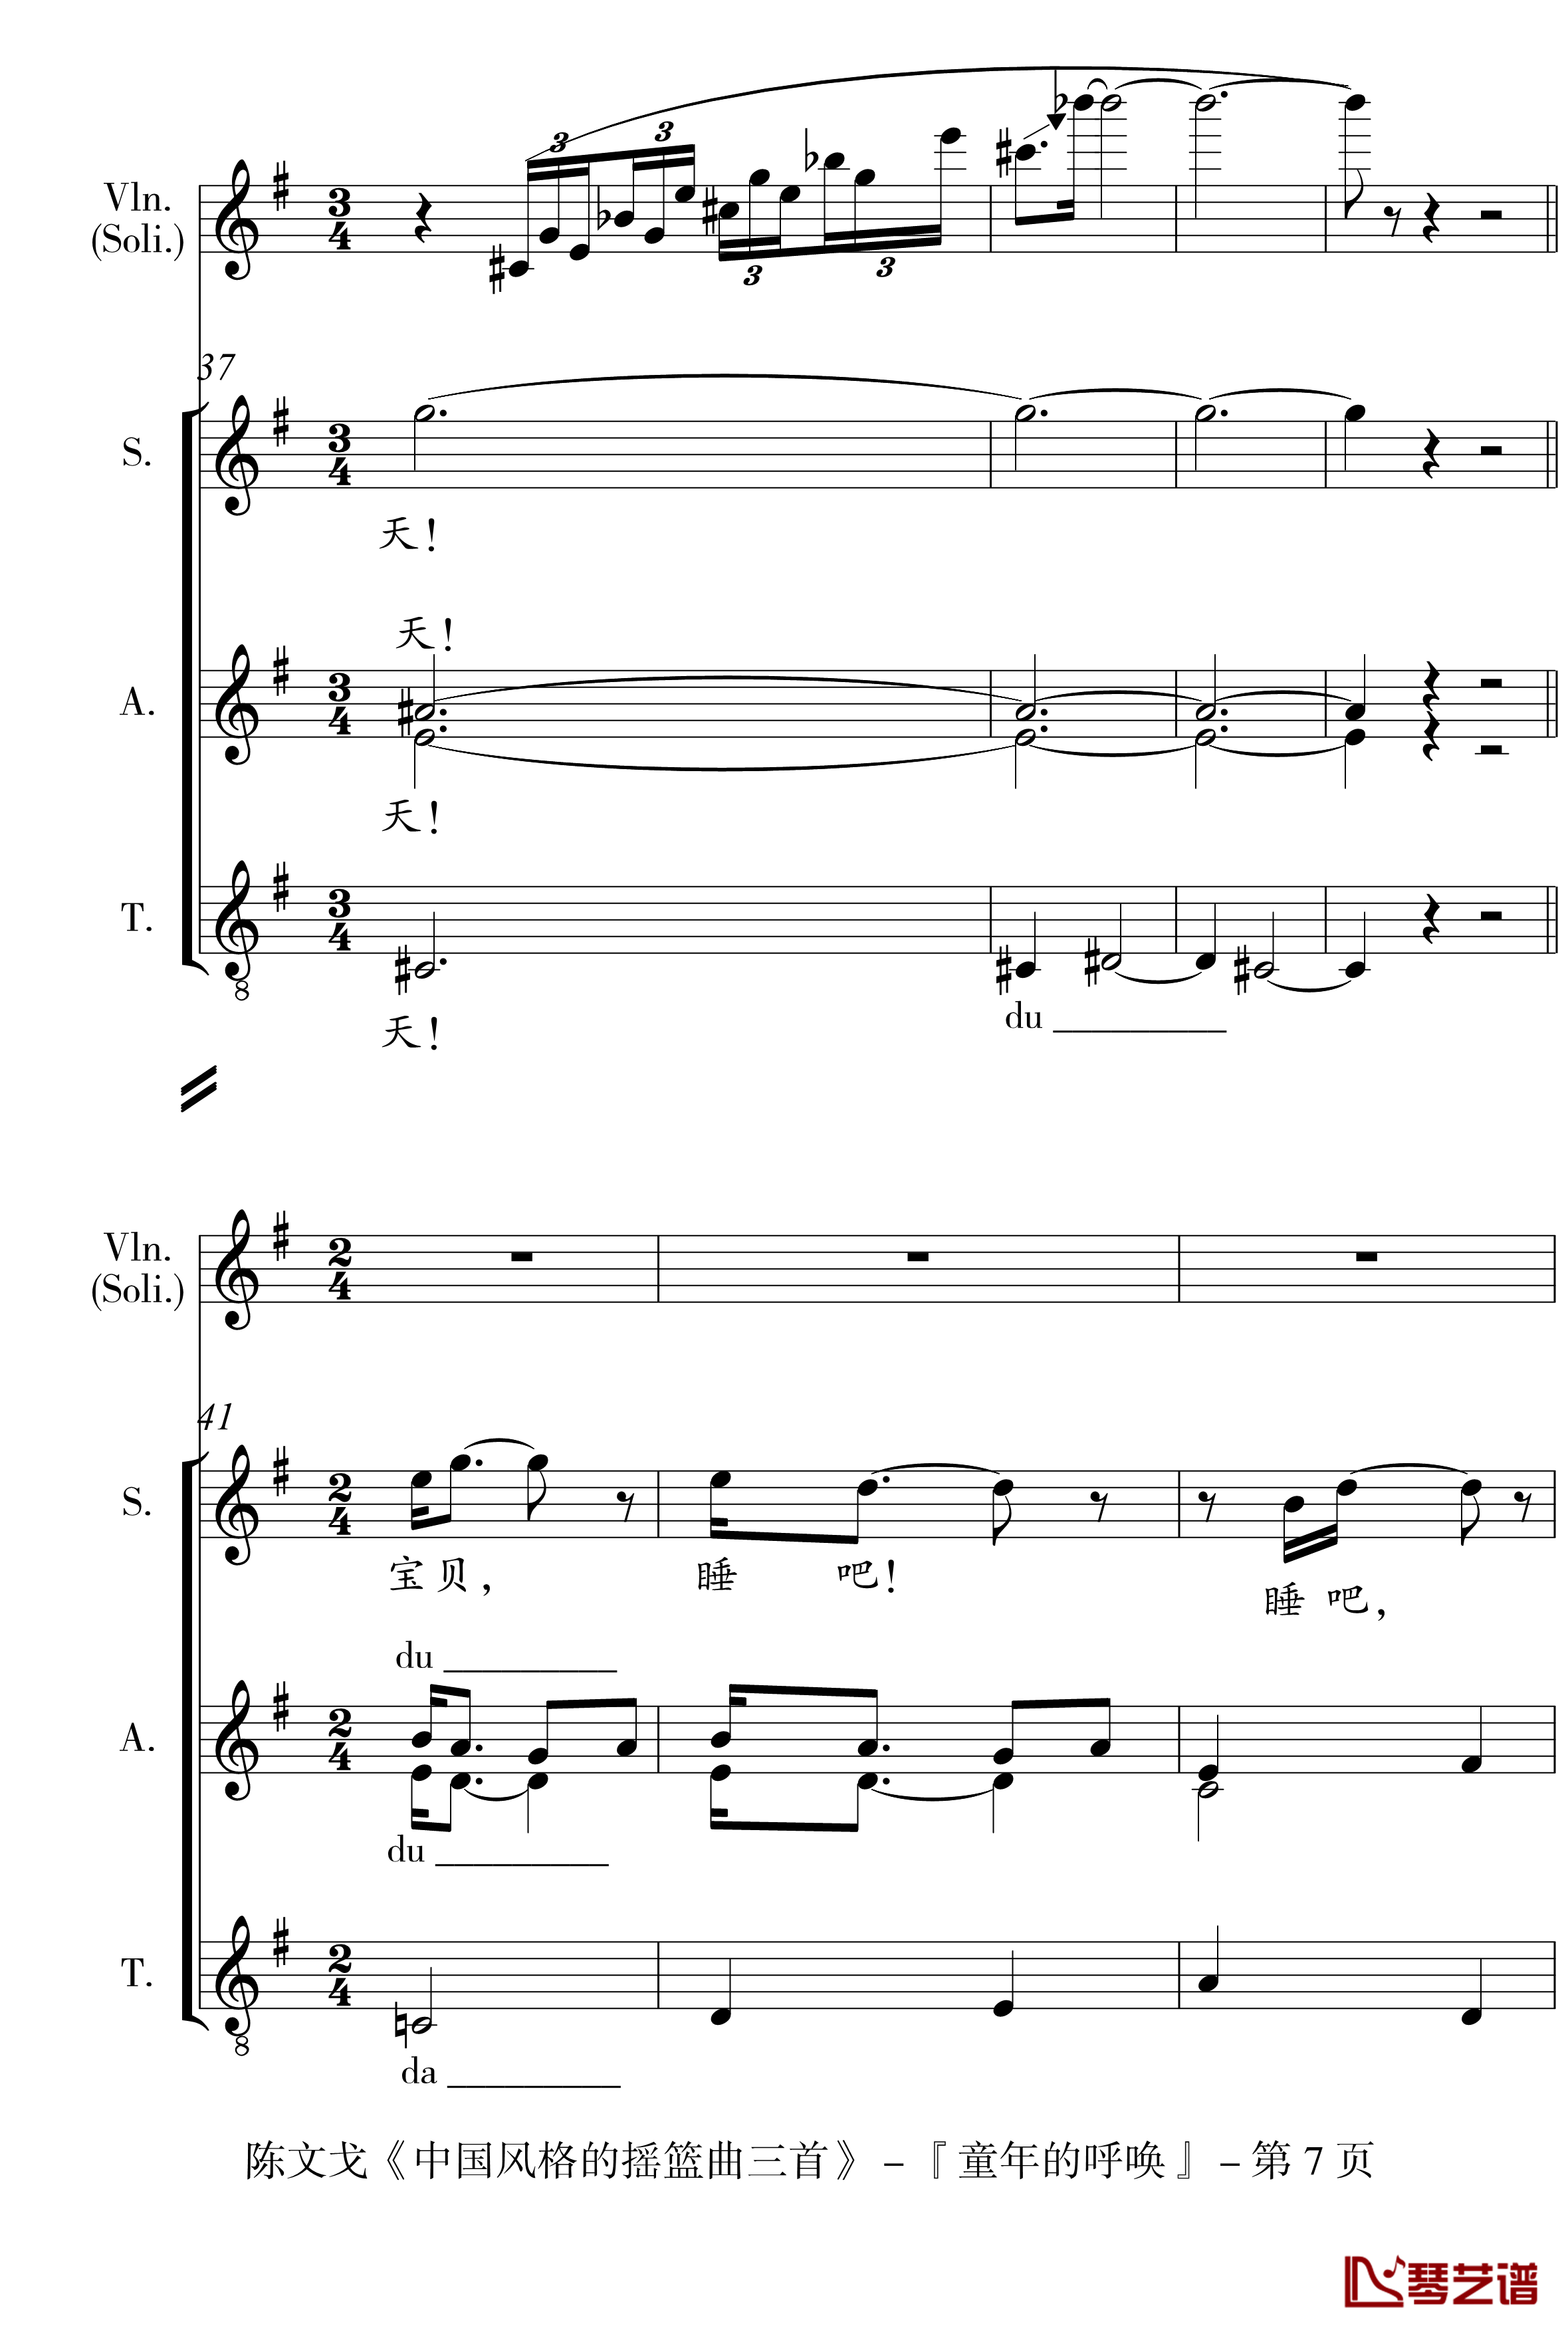 中国风格的合唱摇篮曲三首钢琴谱-I, II, III-陈文戈7